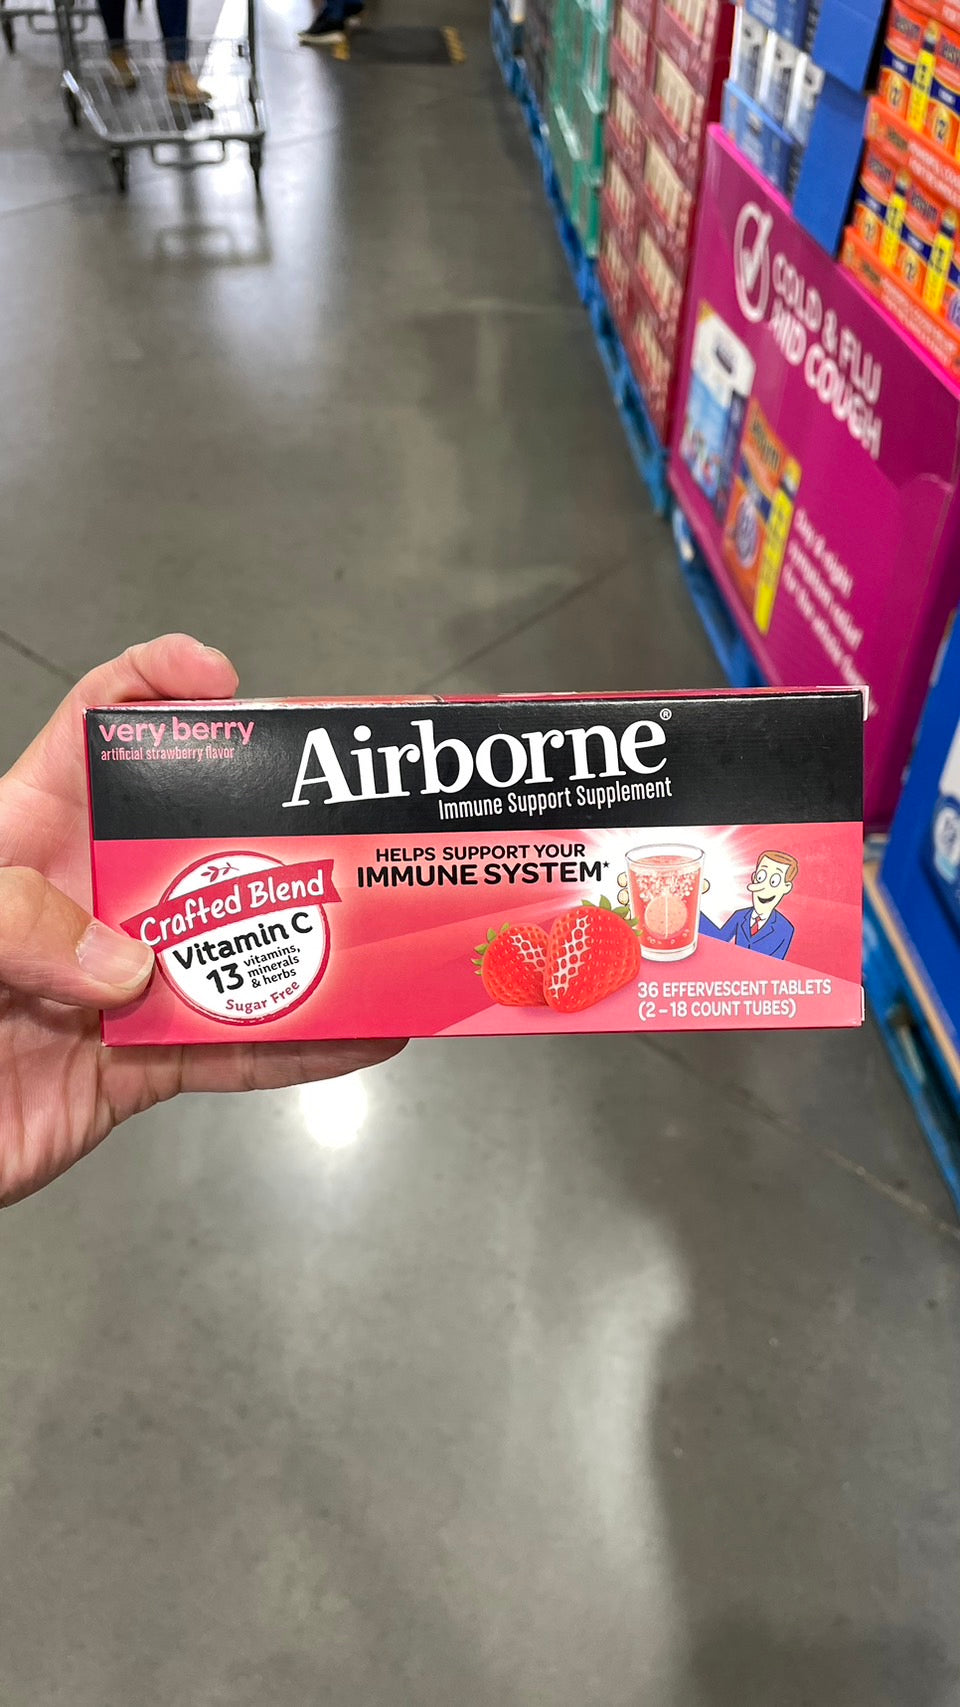 Airborne Immune Support, 36 Effervescent Tablets 艾維寶 Airborne 發泡錠 香橙/莓果口味 10錠/36錠一盒 紫錐菊 橘子 維他命 草莓